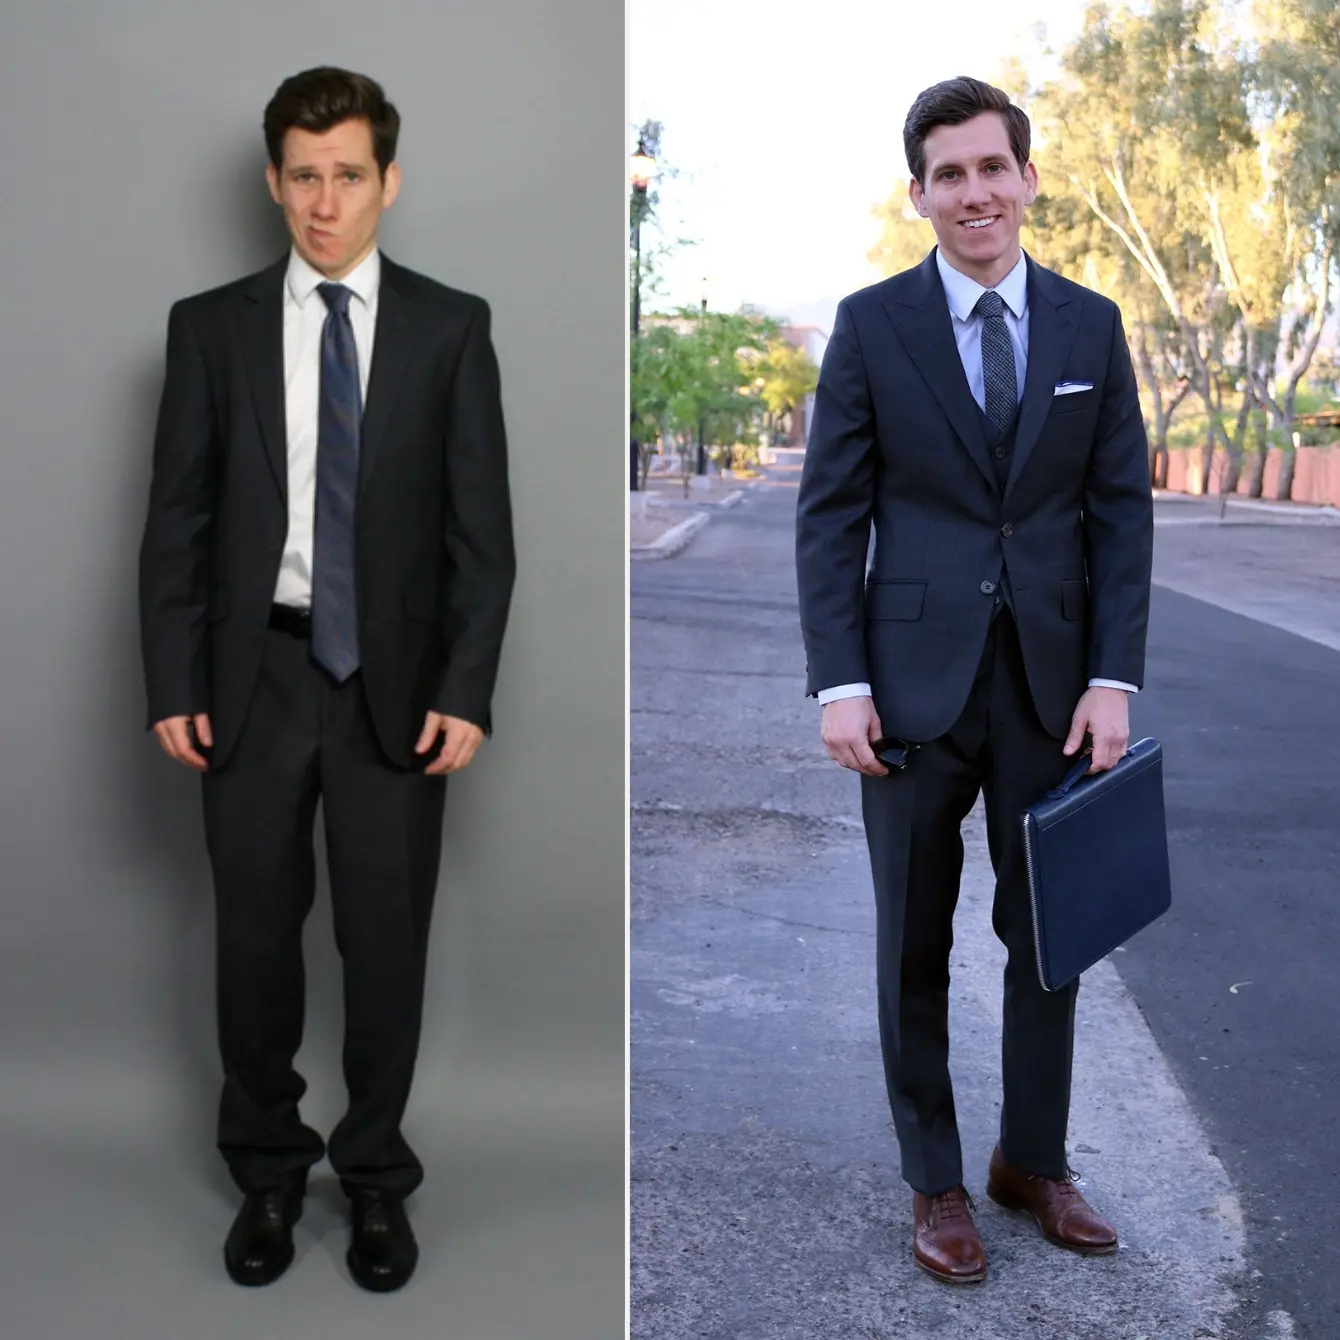 Suit fit good vs bad